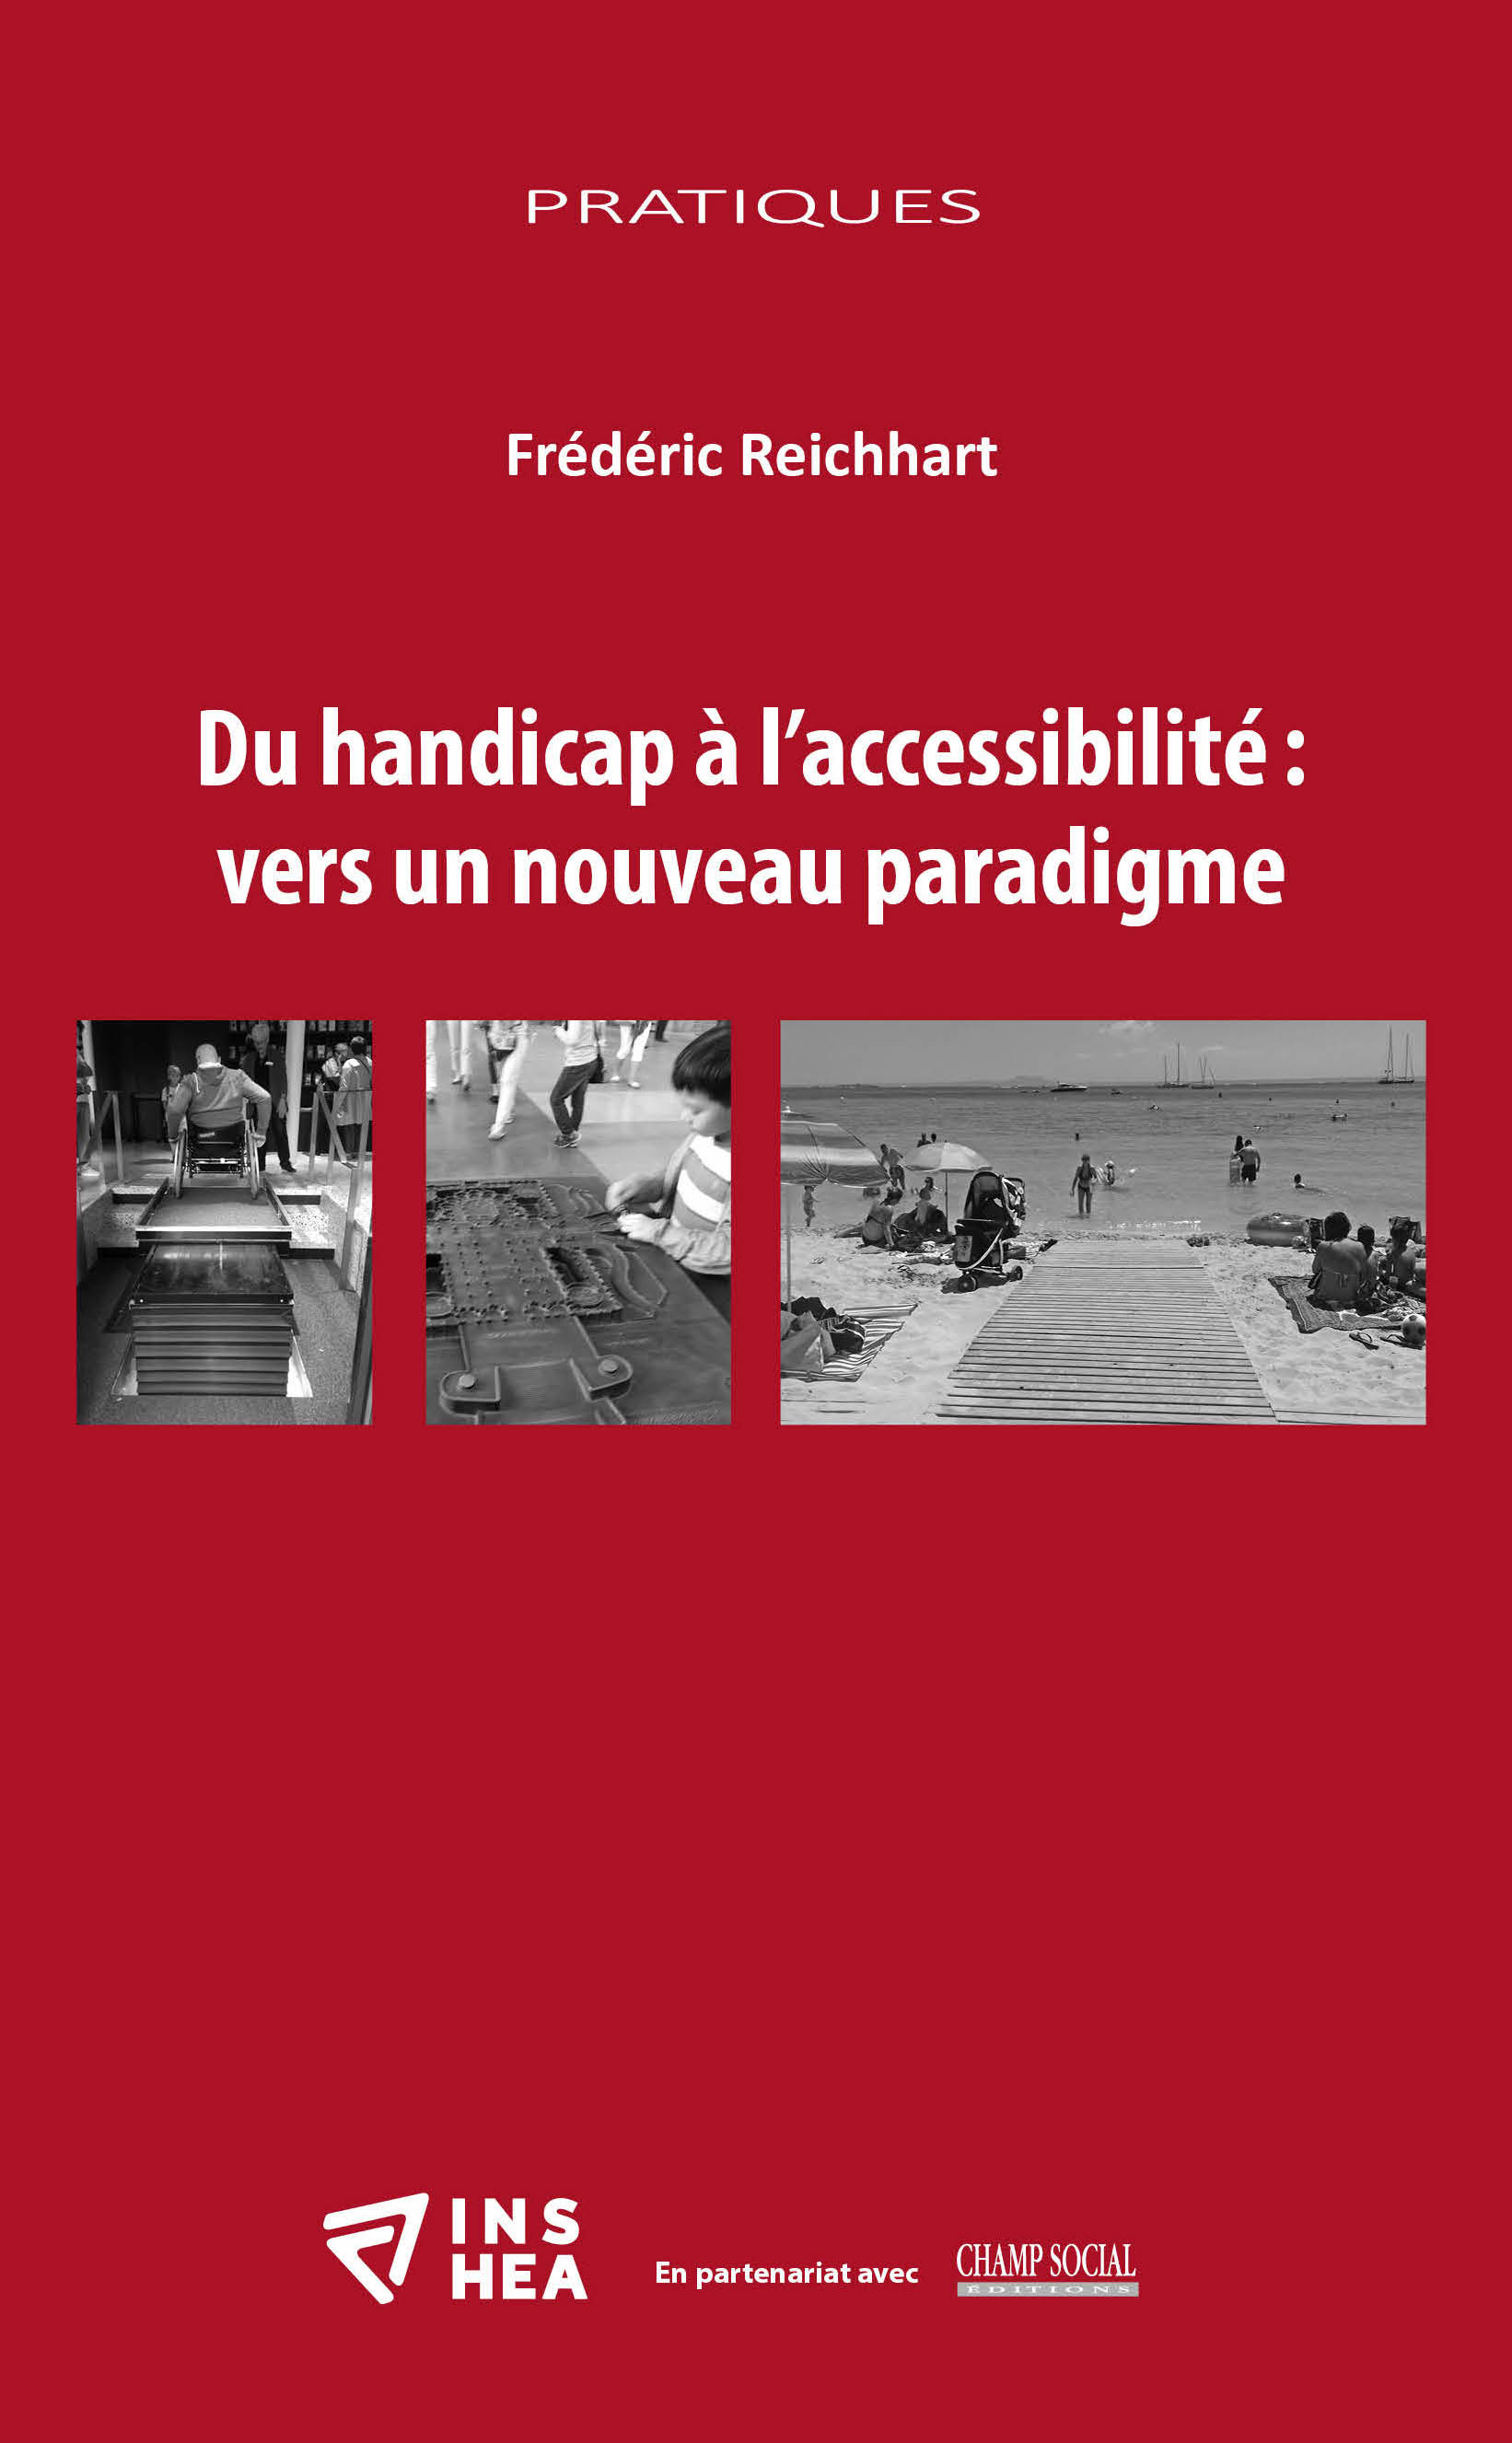 Du handicap à l’accessibilité : vers un nouveau paradigme